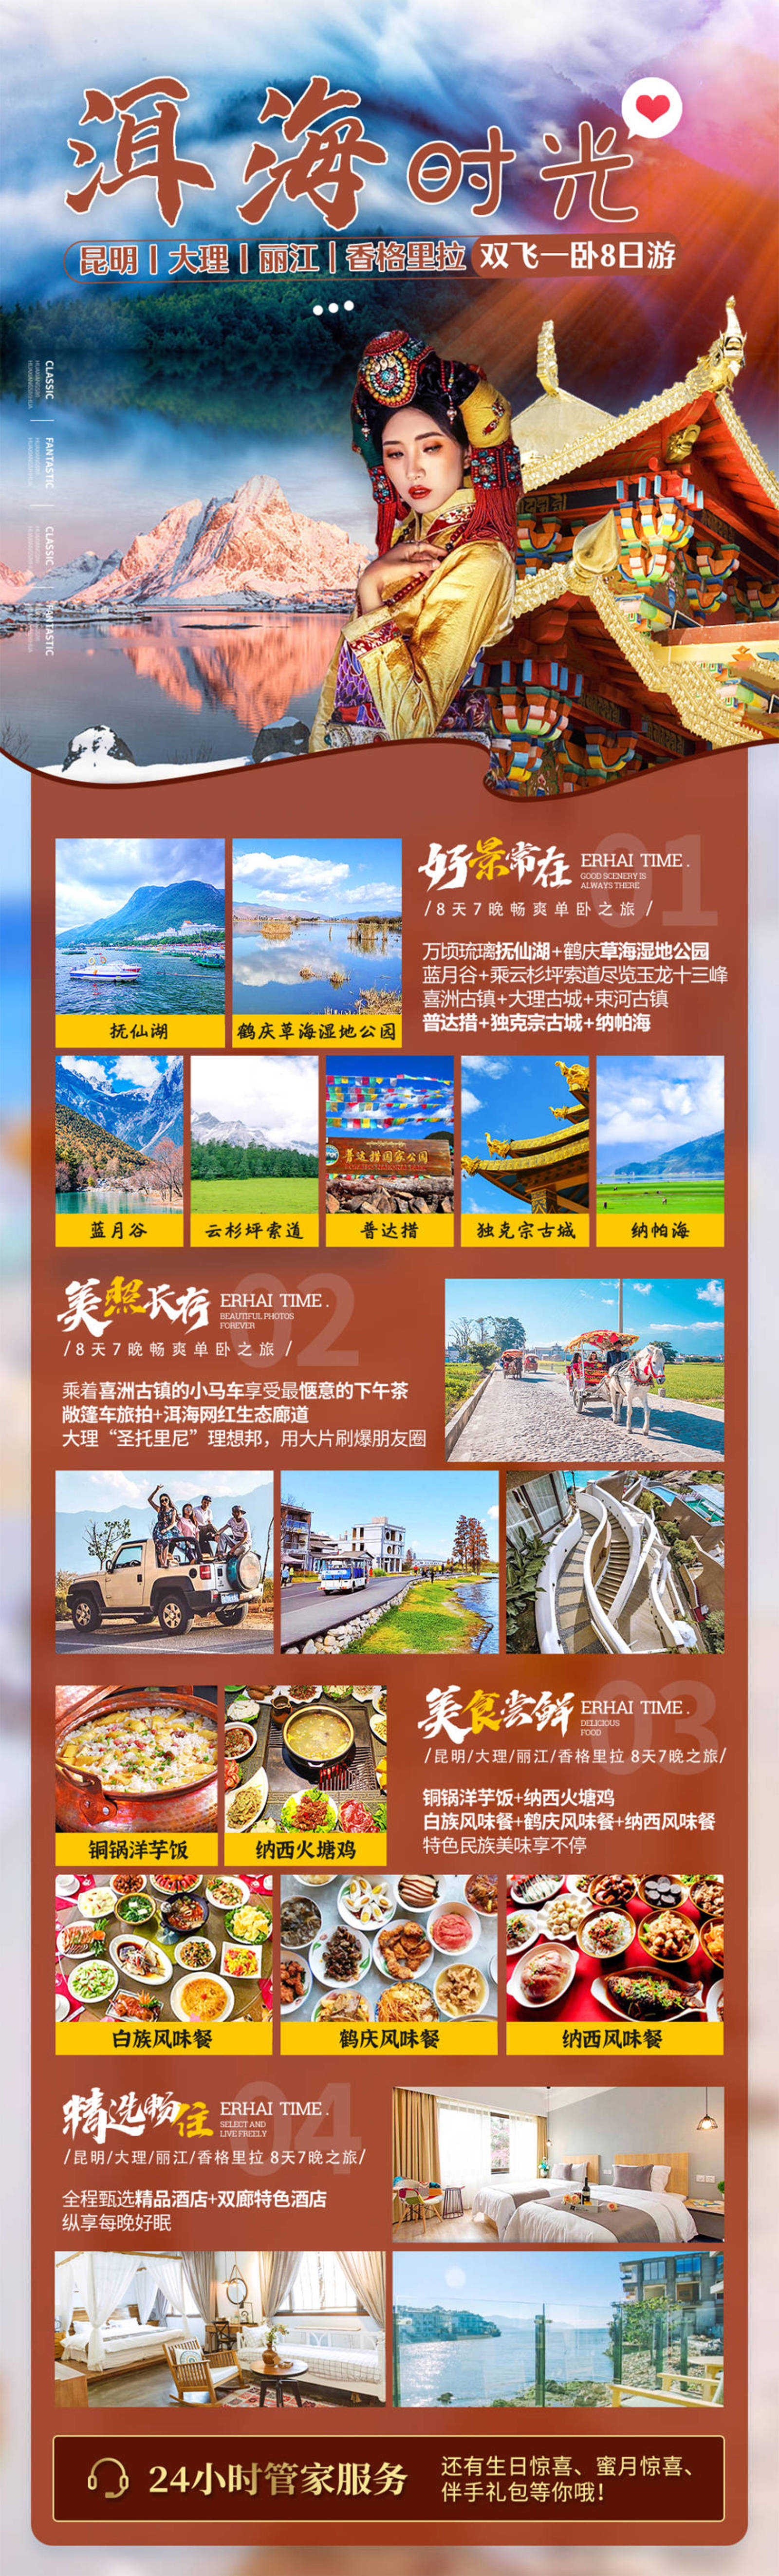 云南休闲旅游品牌宣传系列海报-第1张